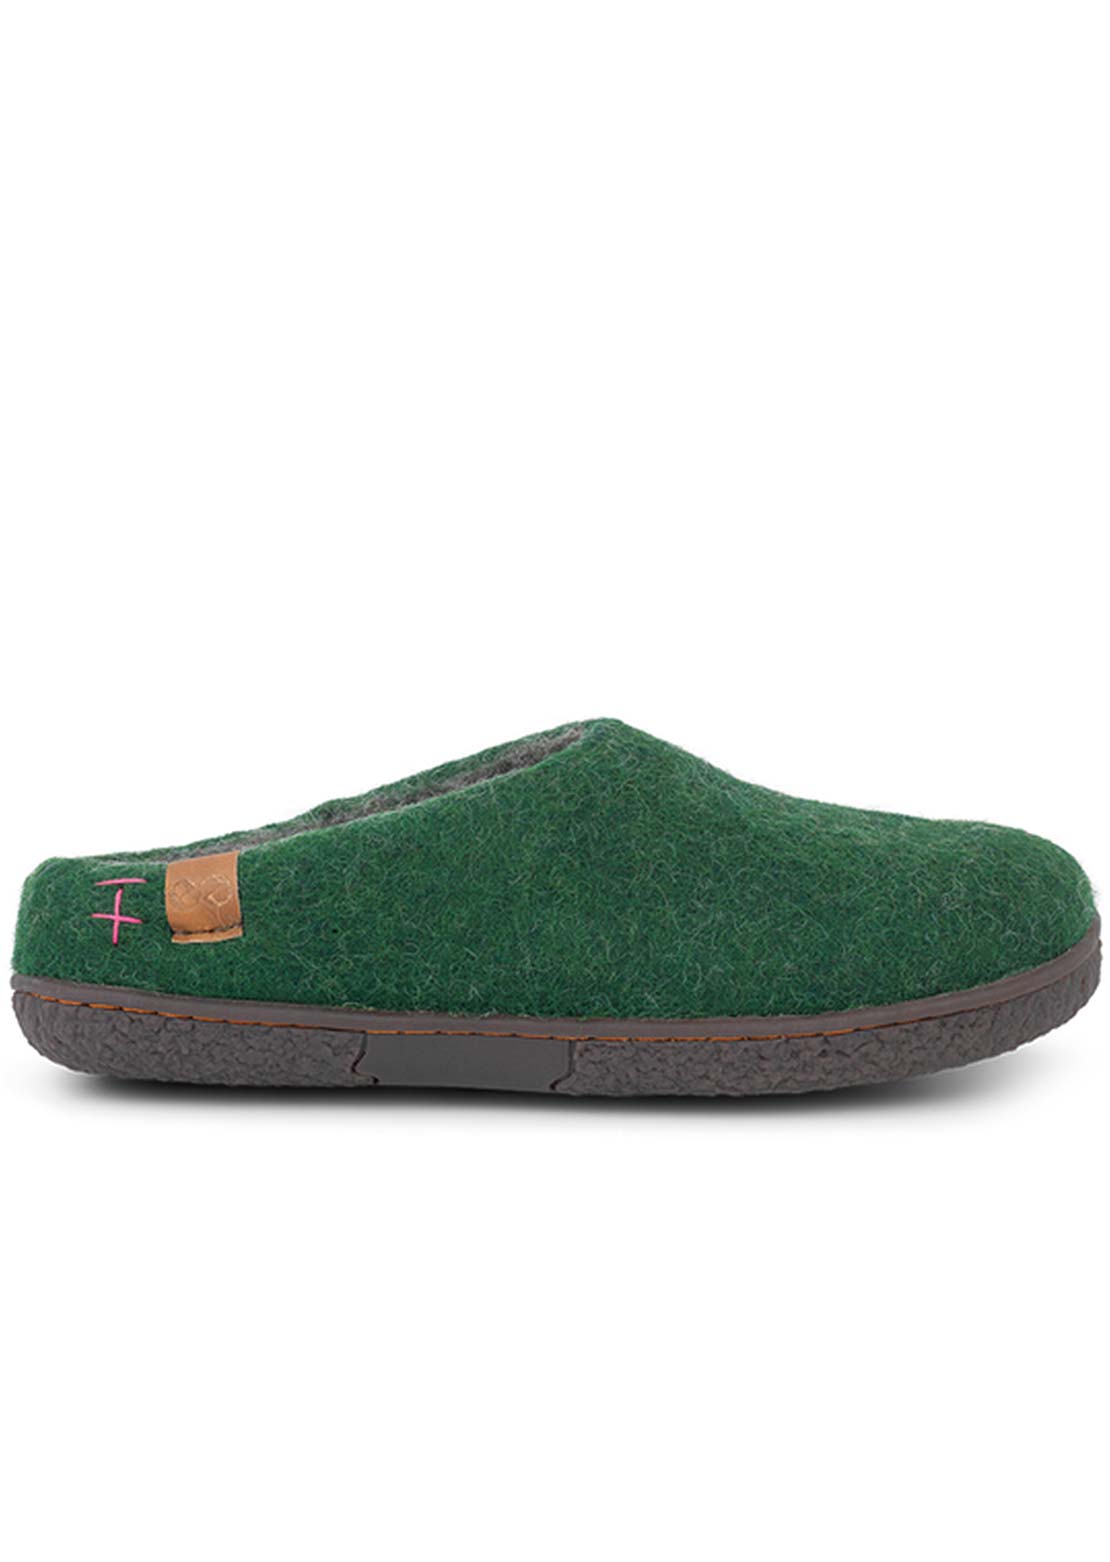 Wool by Green Unisex Tibet Rubber Sole Open Heel Slippers Olive